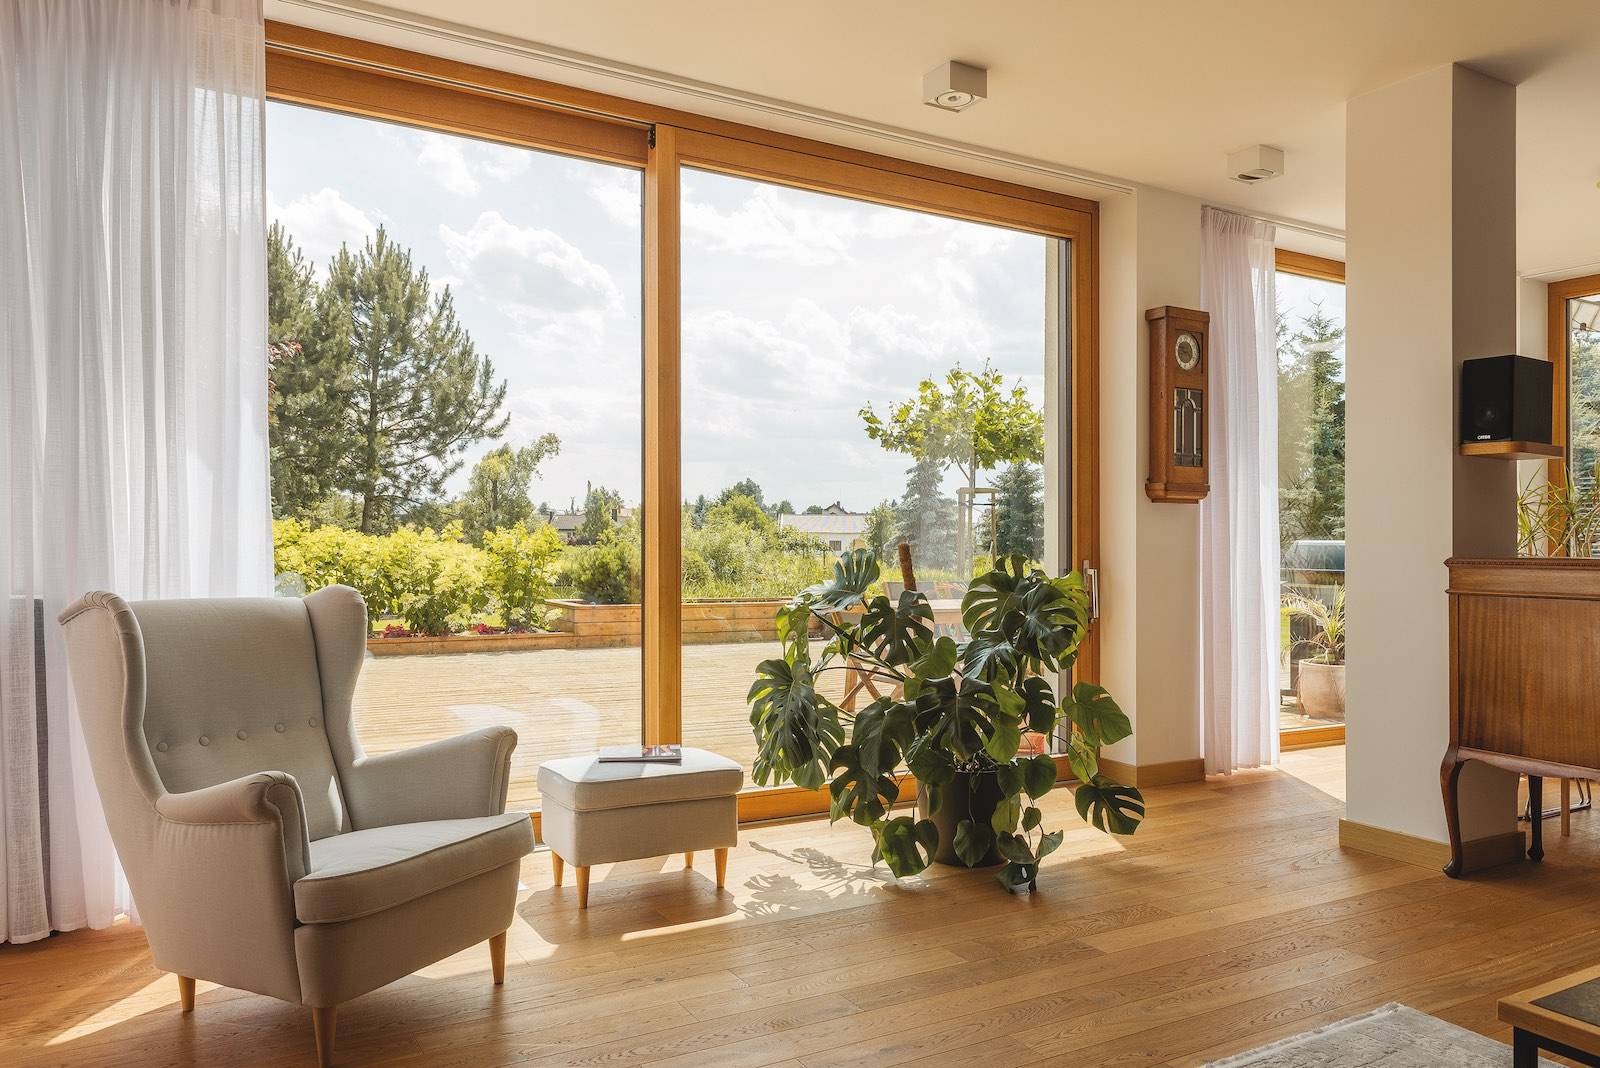 Okna INNOVIEW powstały z połączenia drewna i aluminium. To kompozycja materiałów, która tworzy wyjątkowe okna, a one zmieniają dom i umożliwiają kreowanie wnętrz otwartych na otaczający nas świat (Fot. Materiały prasowe)